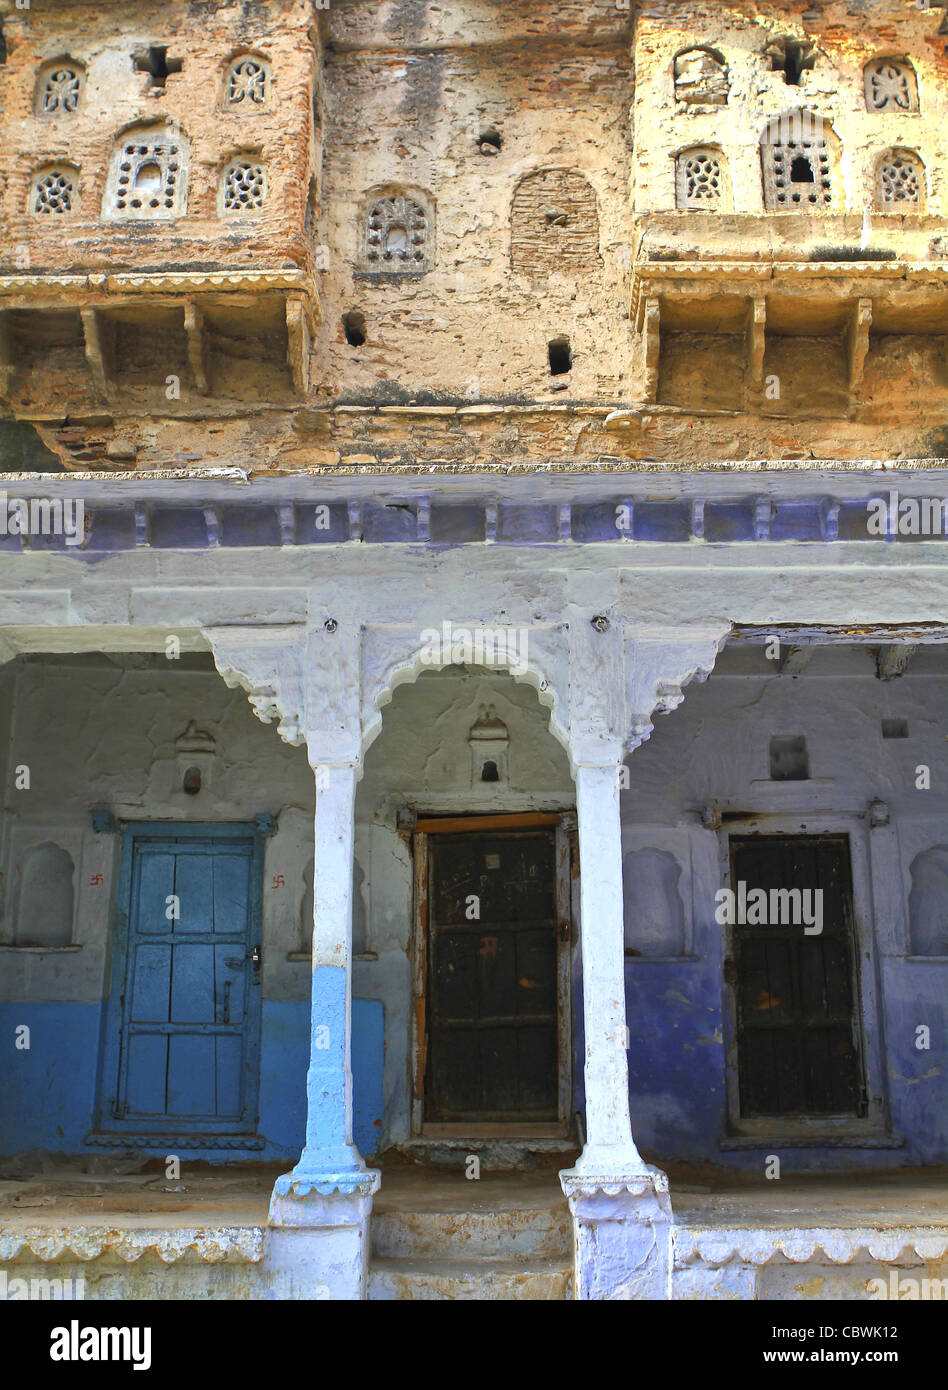 Maison de ville traditionnelle. Bundi. Le Rajasthan. L'Inde Banque D'Images